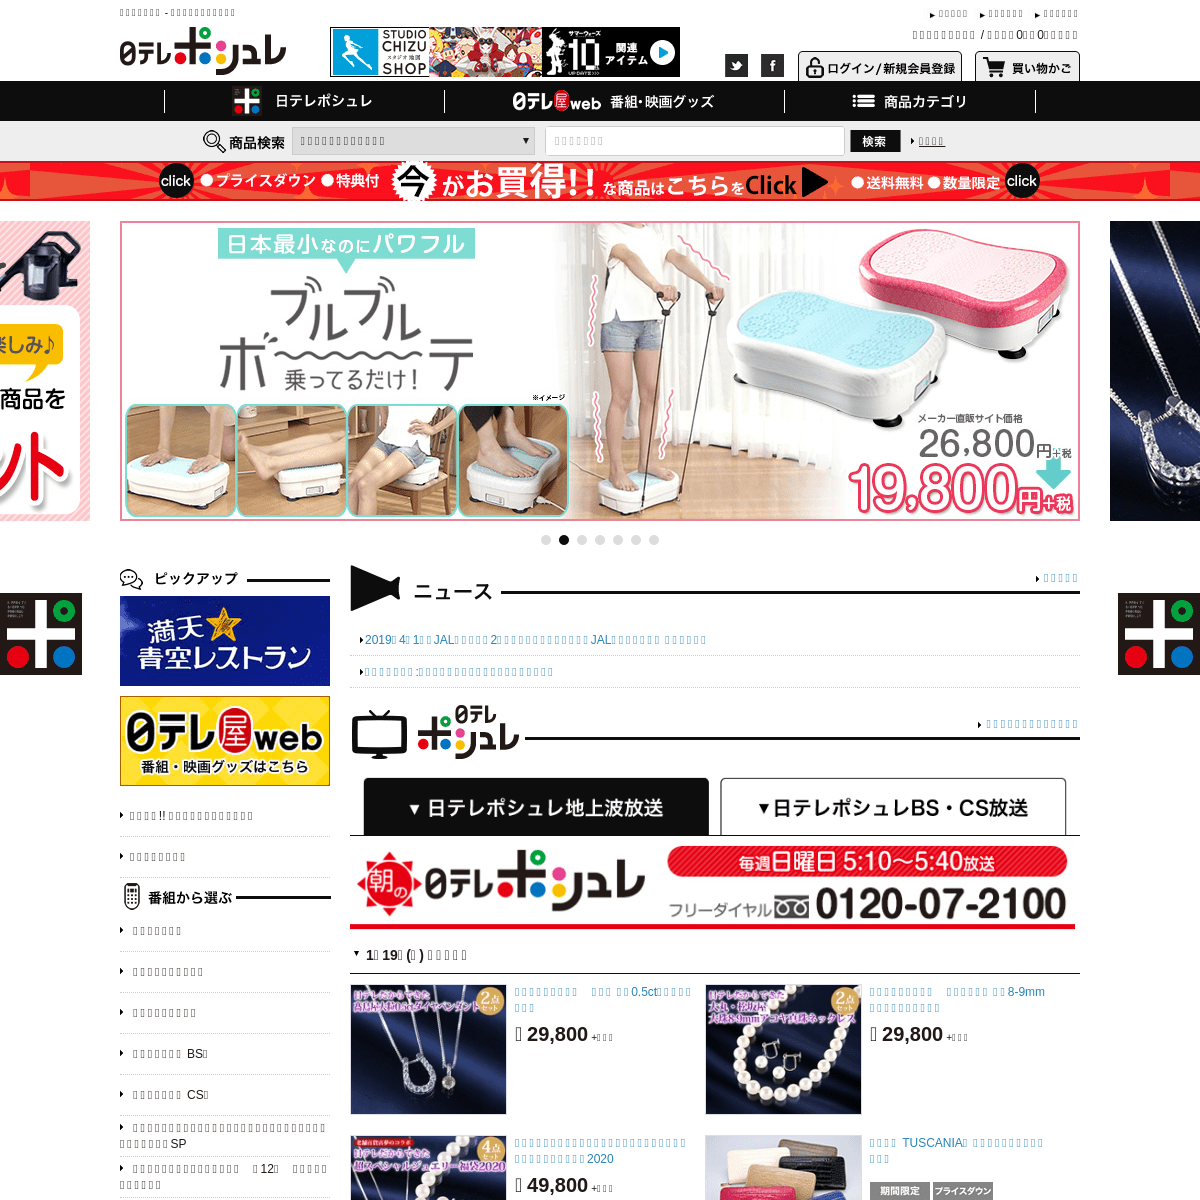 A complete backup of ntvshop.jp